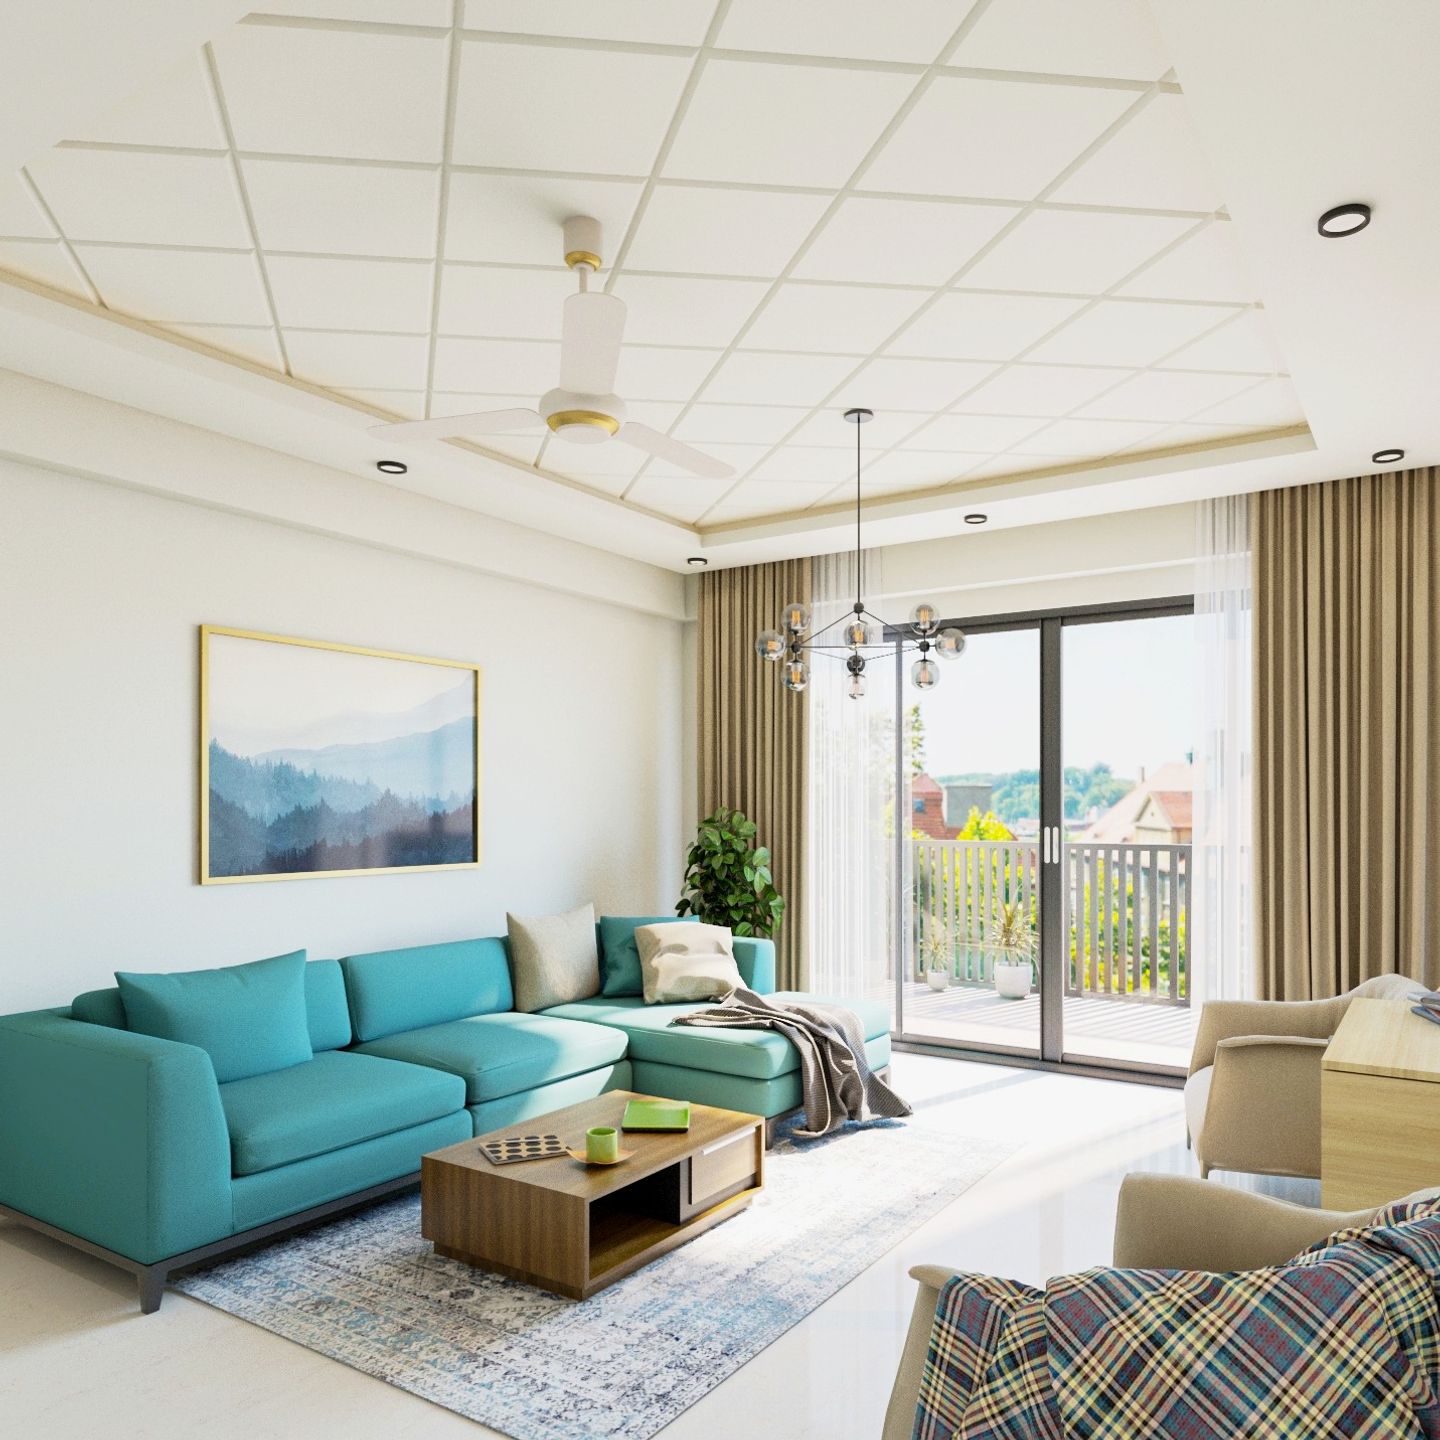 White Gypsum Ceiling Design For Living Room - Livspace